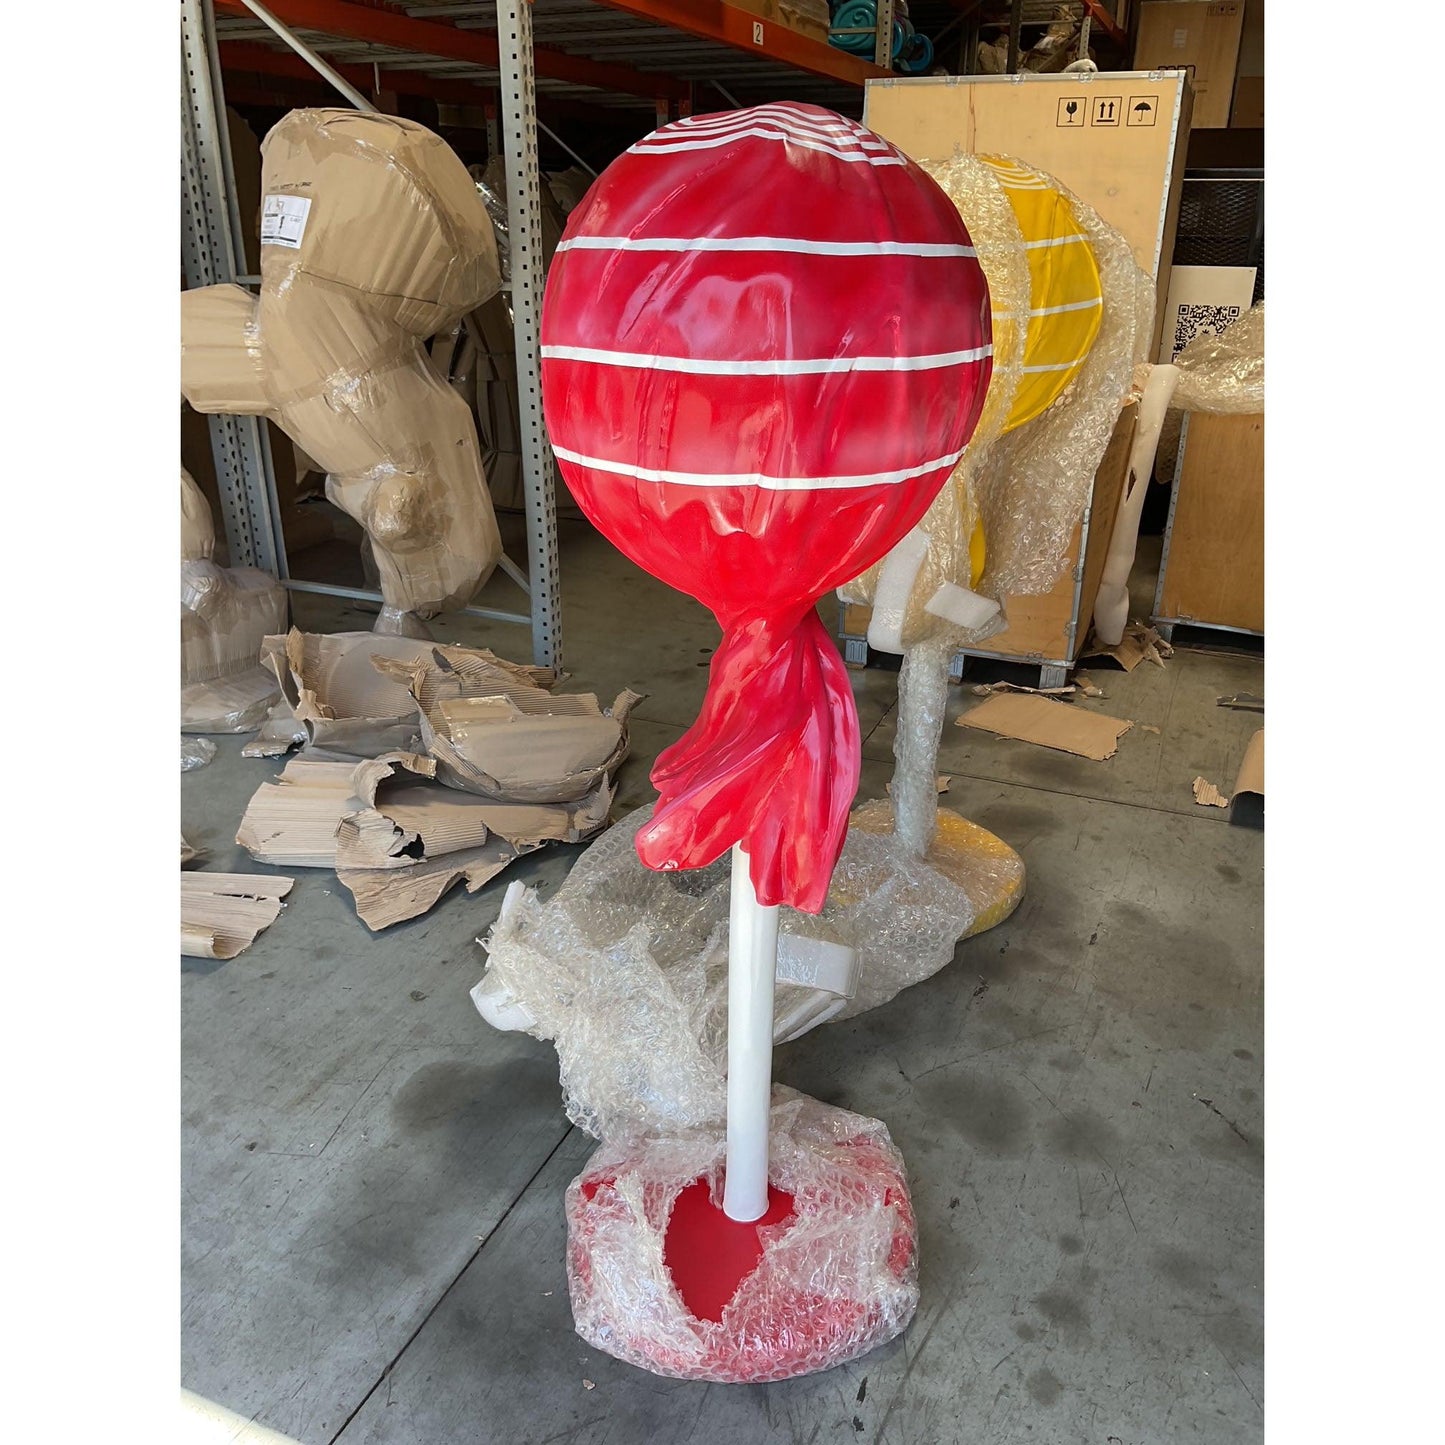 Large Red Lollipop Statue - LM Treasures Prop Rentals 